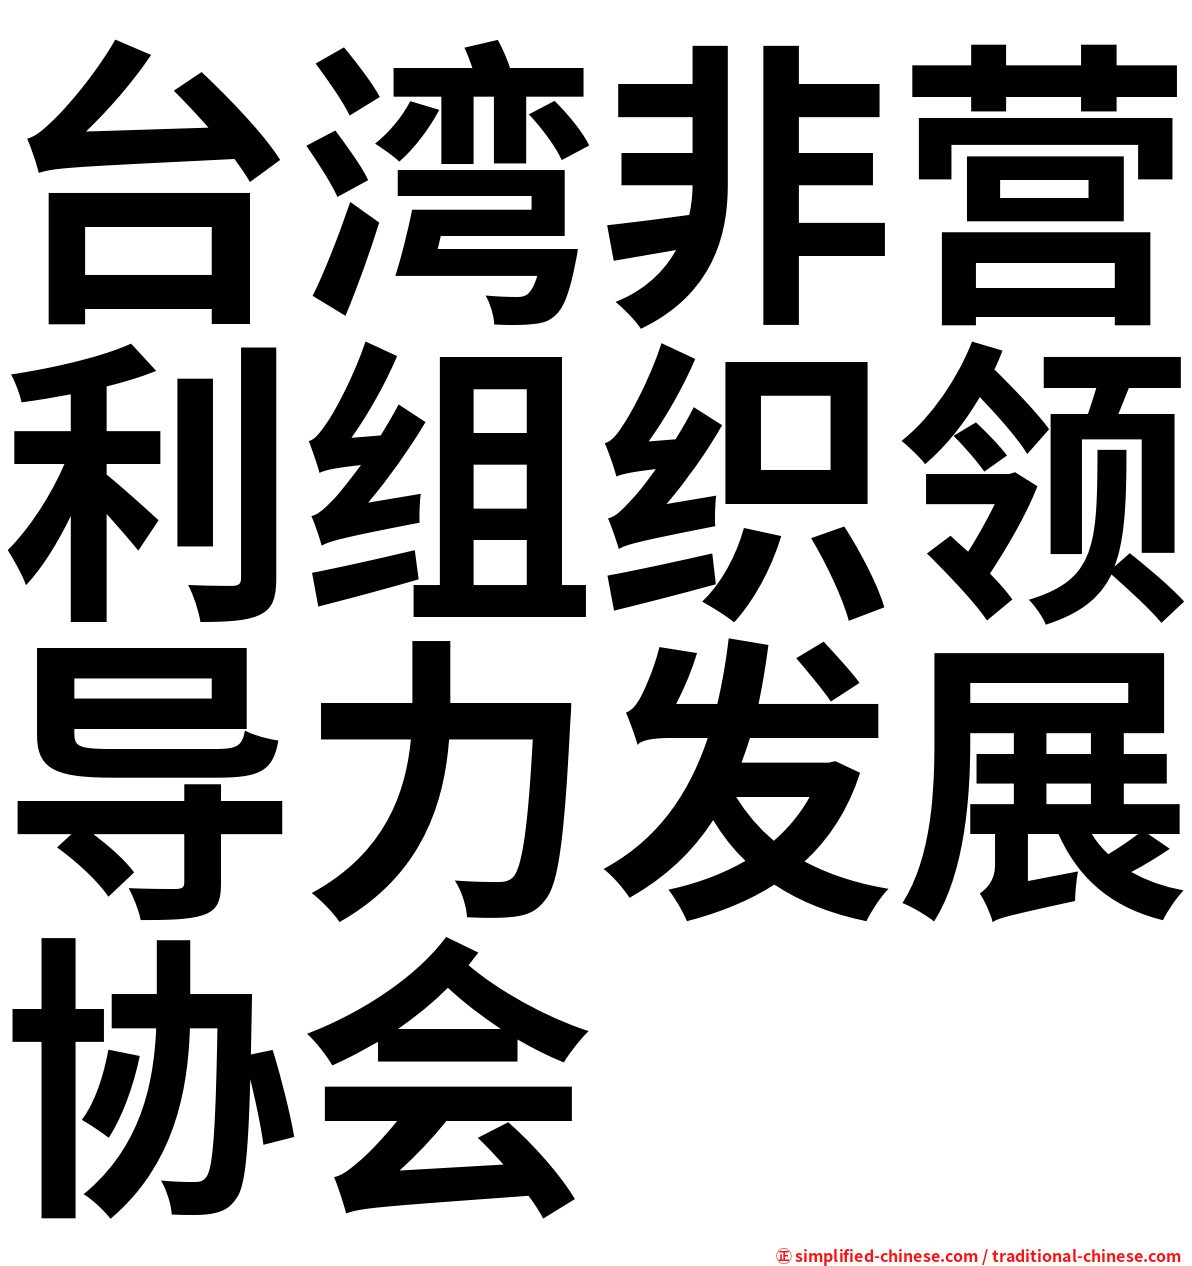 台湾非营利组织领导力发展协会